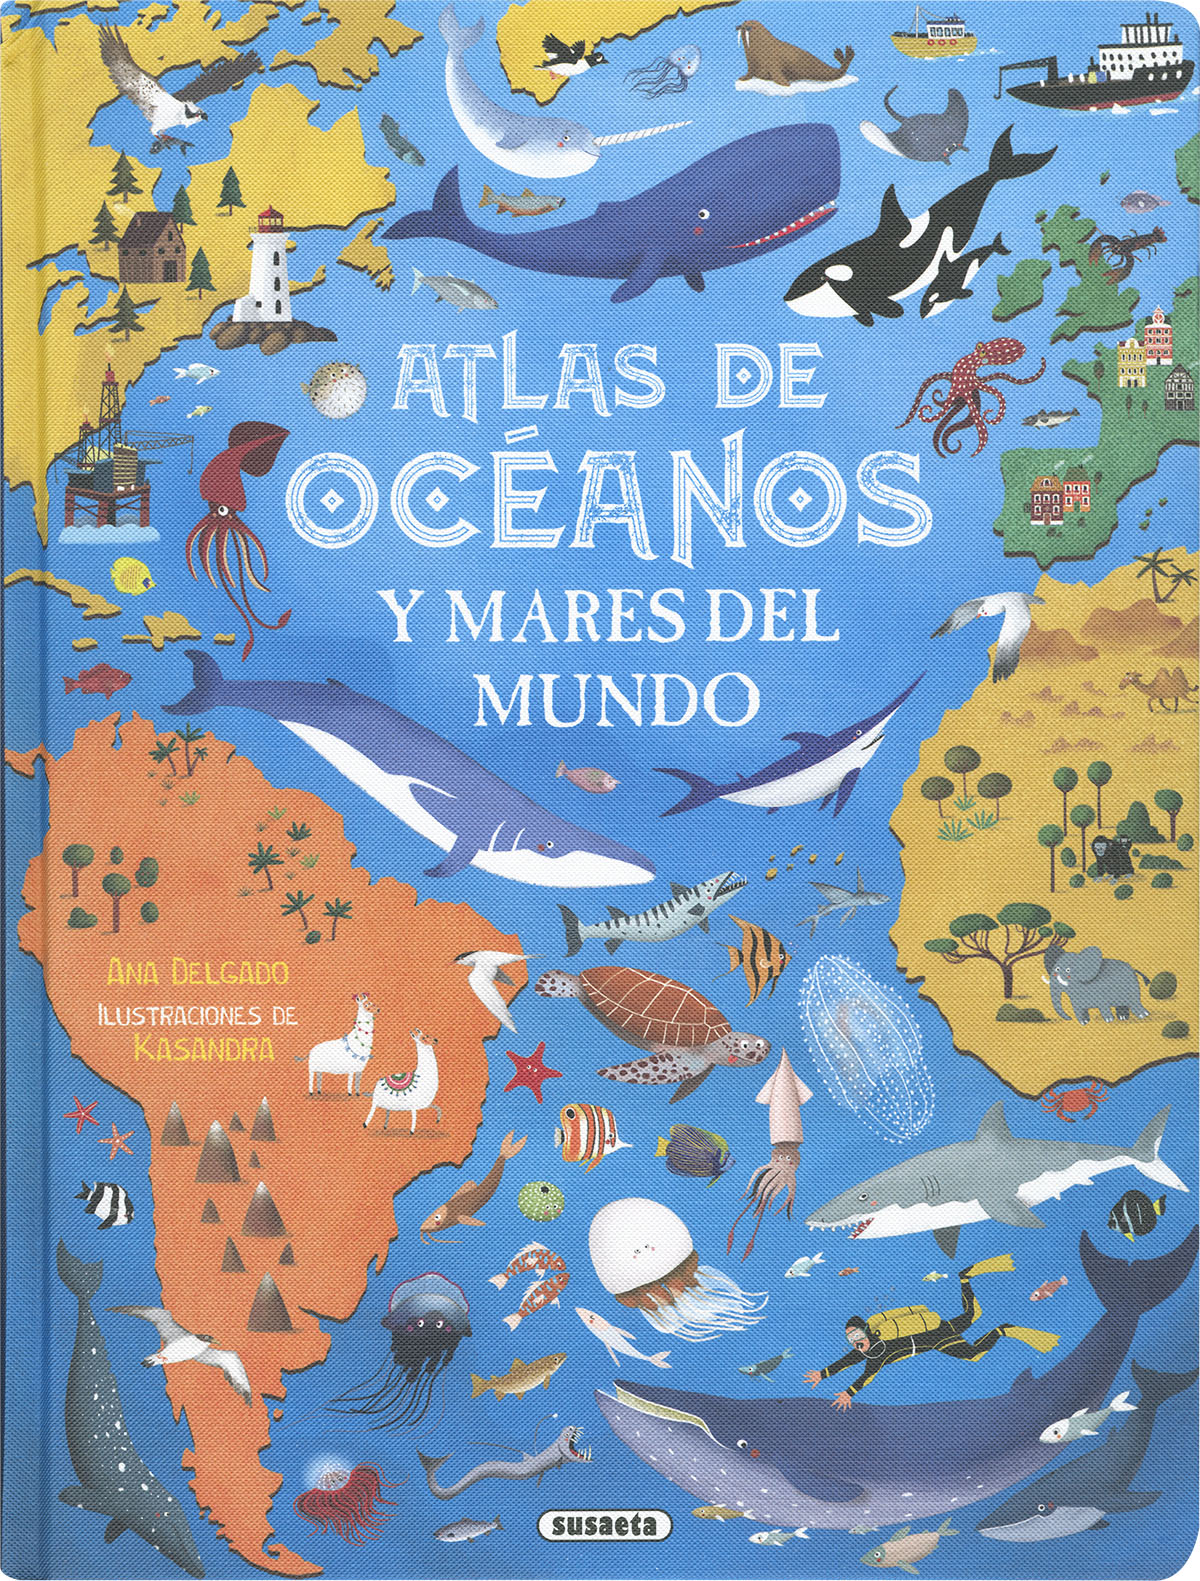 Atlas de océanos y mares del mundo